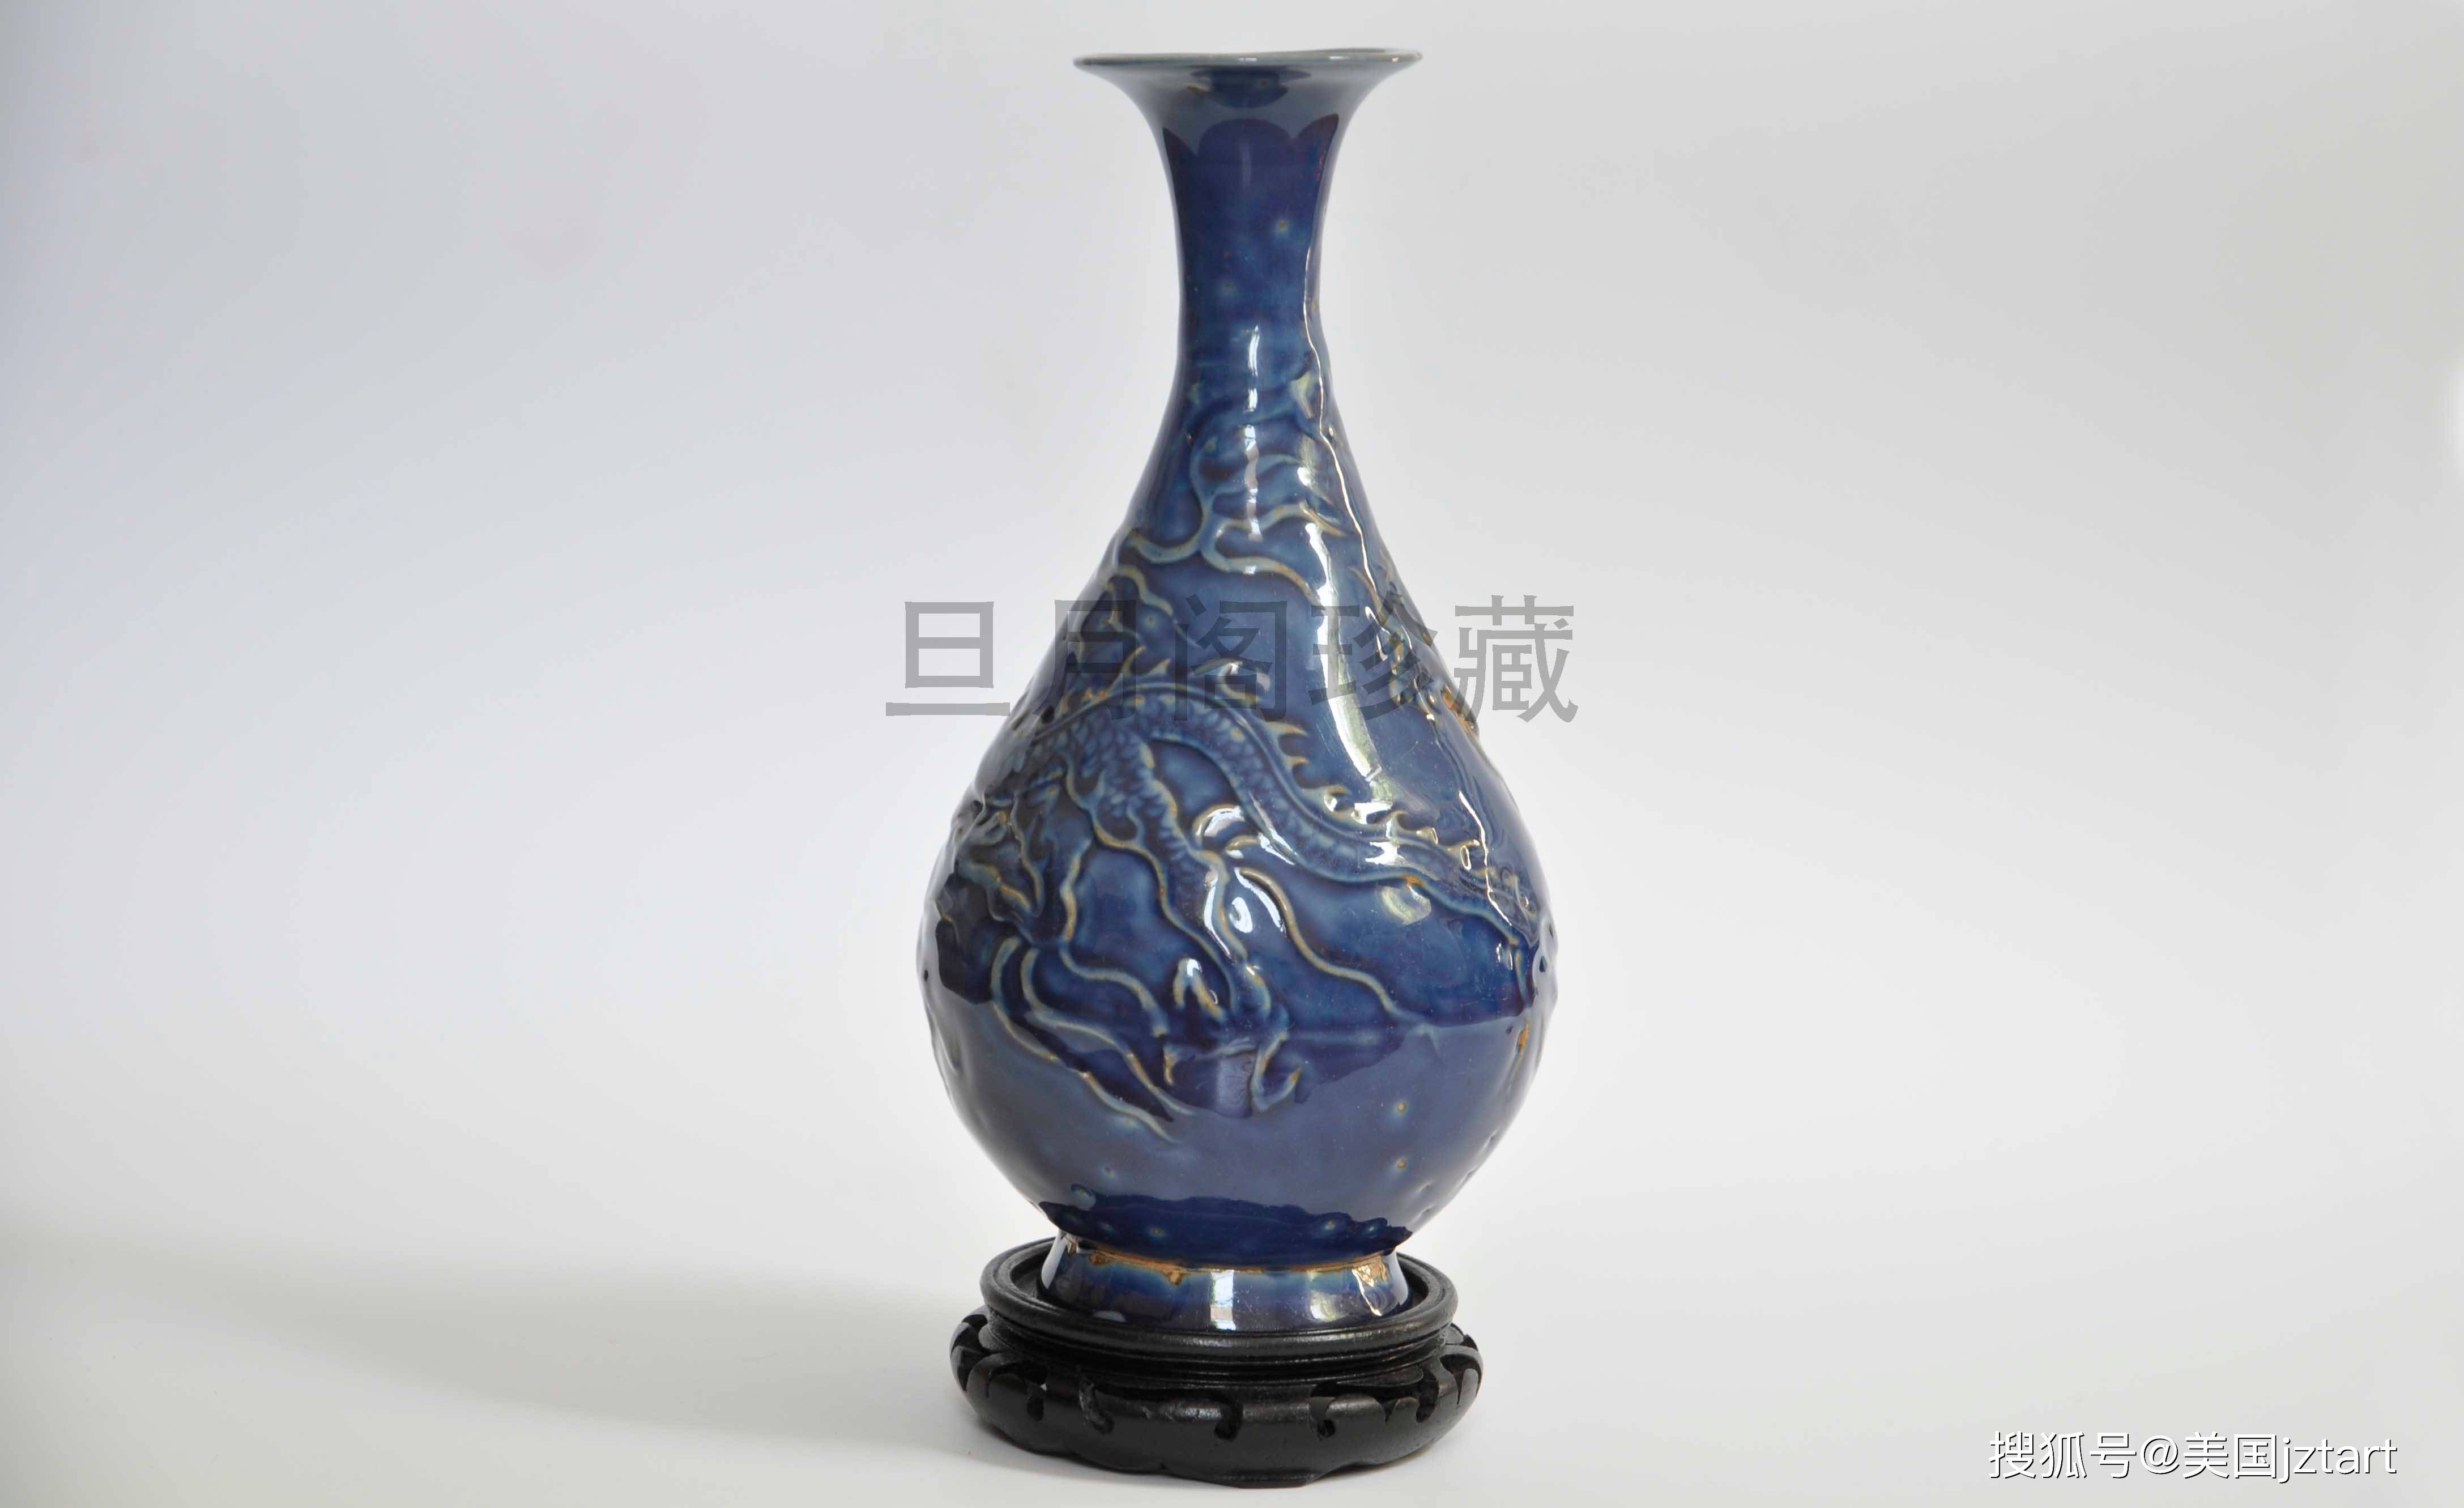 蓝釉,为元代景德镇创烧的单色釉新品种,係采用青花钴料于高温下烧成